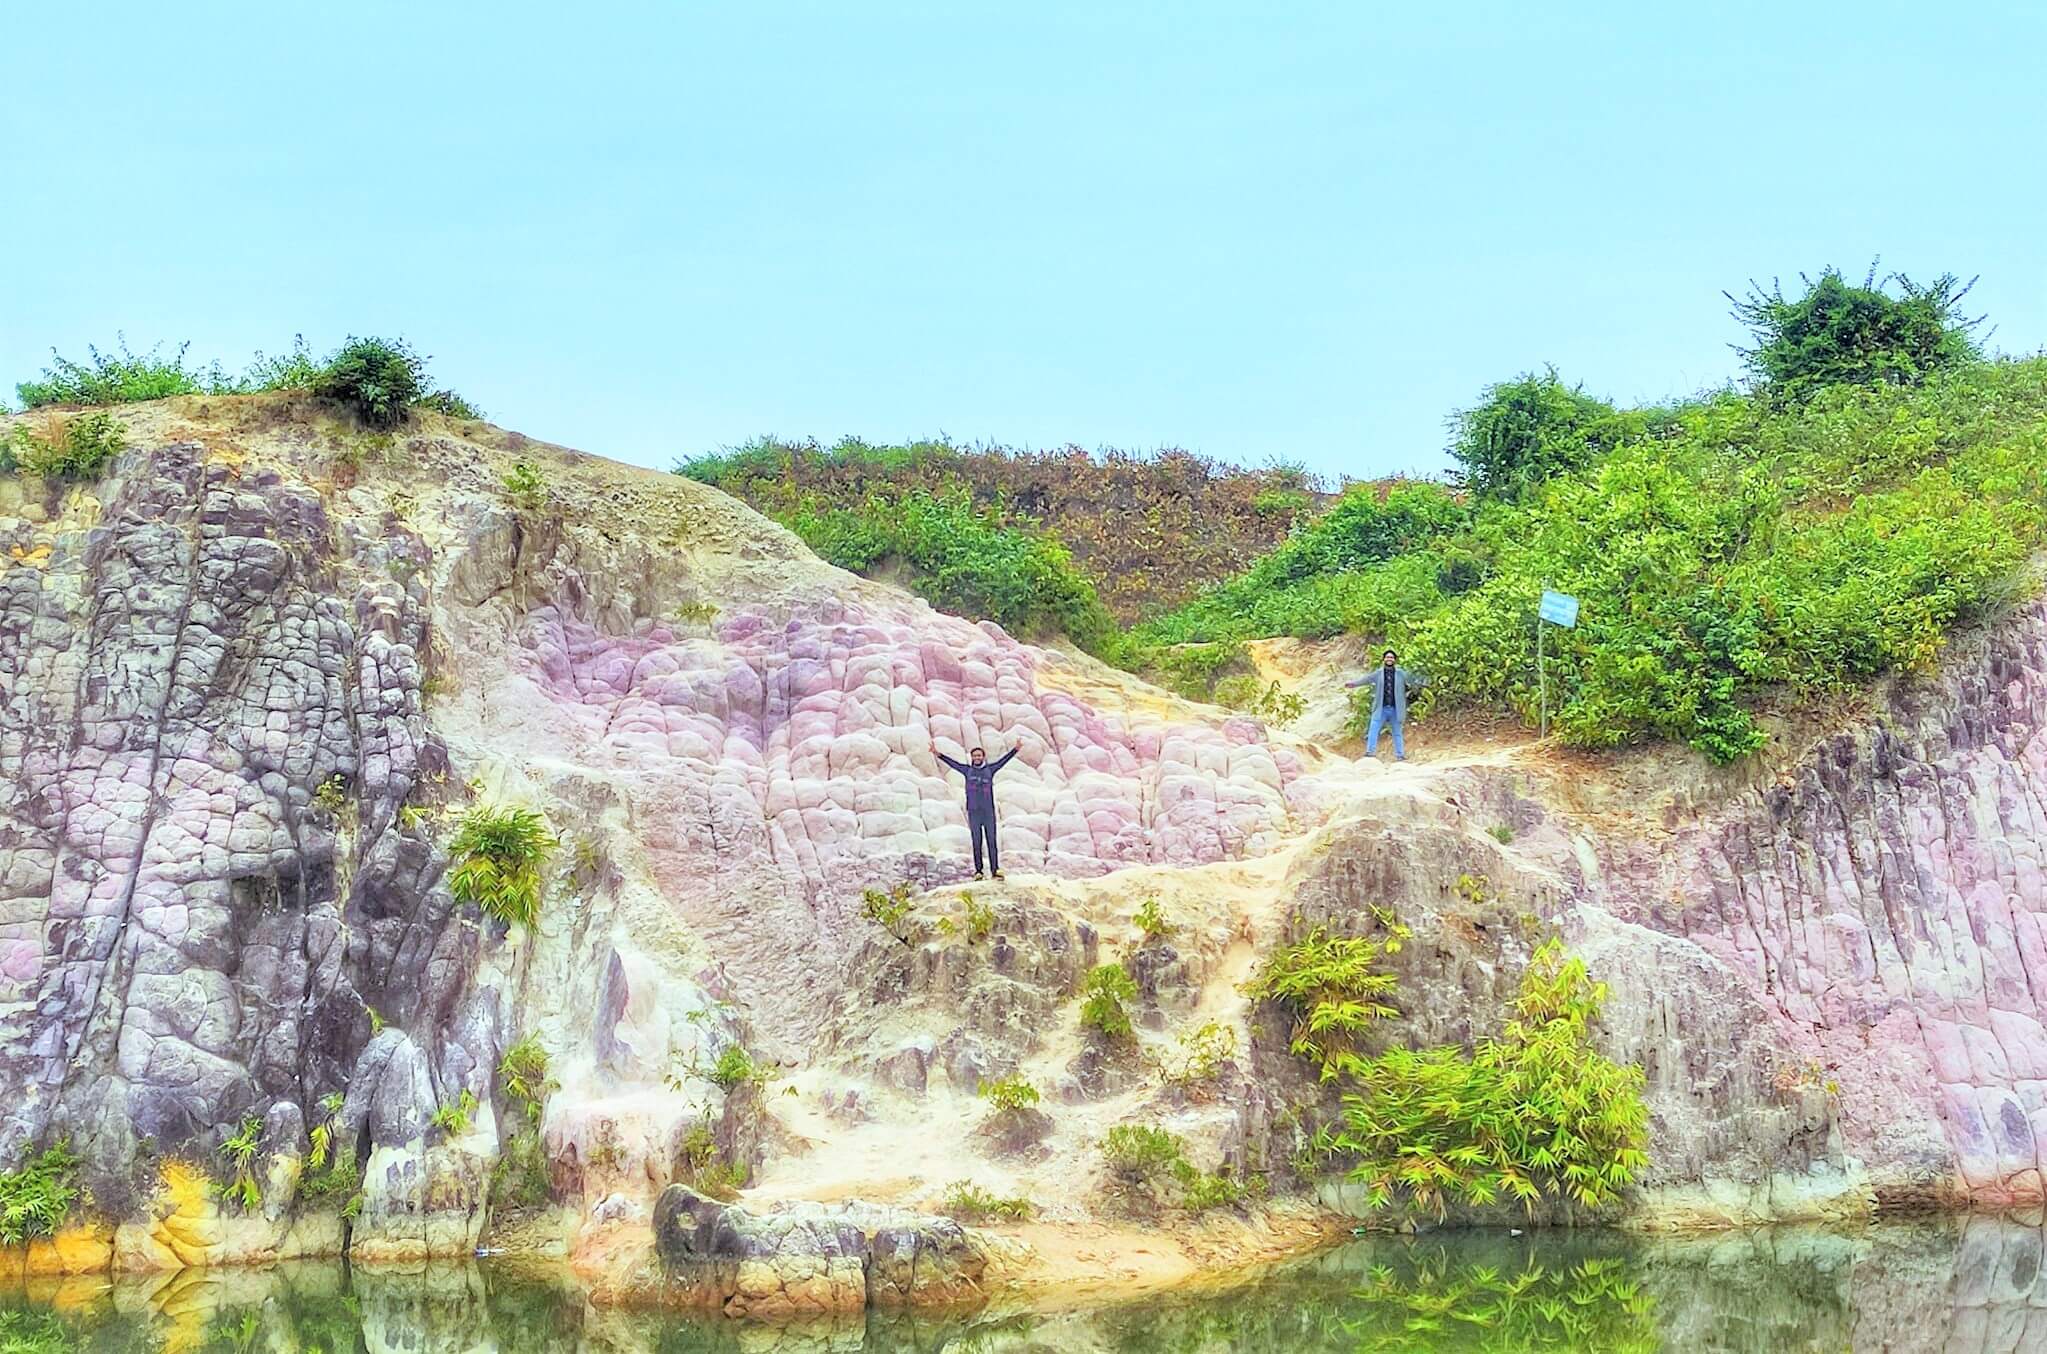 লেঙ্গুরা, প্রাকৃতিক সৌন্দর্যের লীলাভূমি - নেত্রকোনা, ময়মনসিংহ - Fooxz Travel